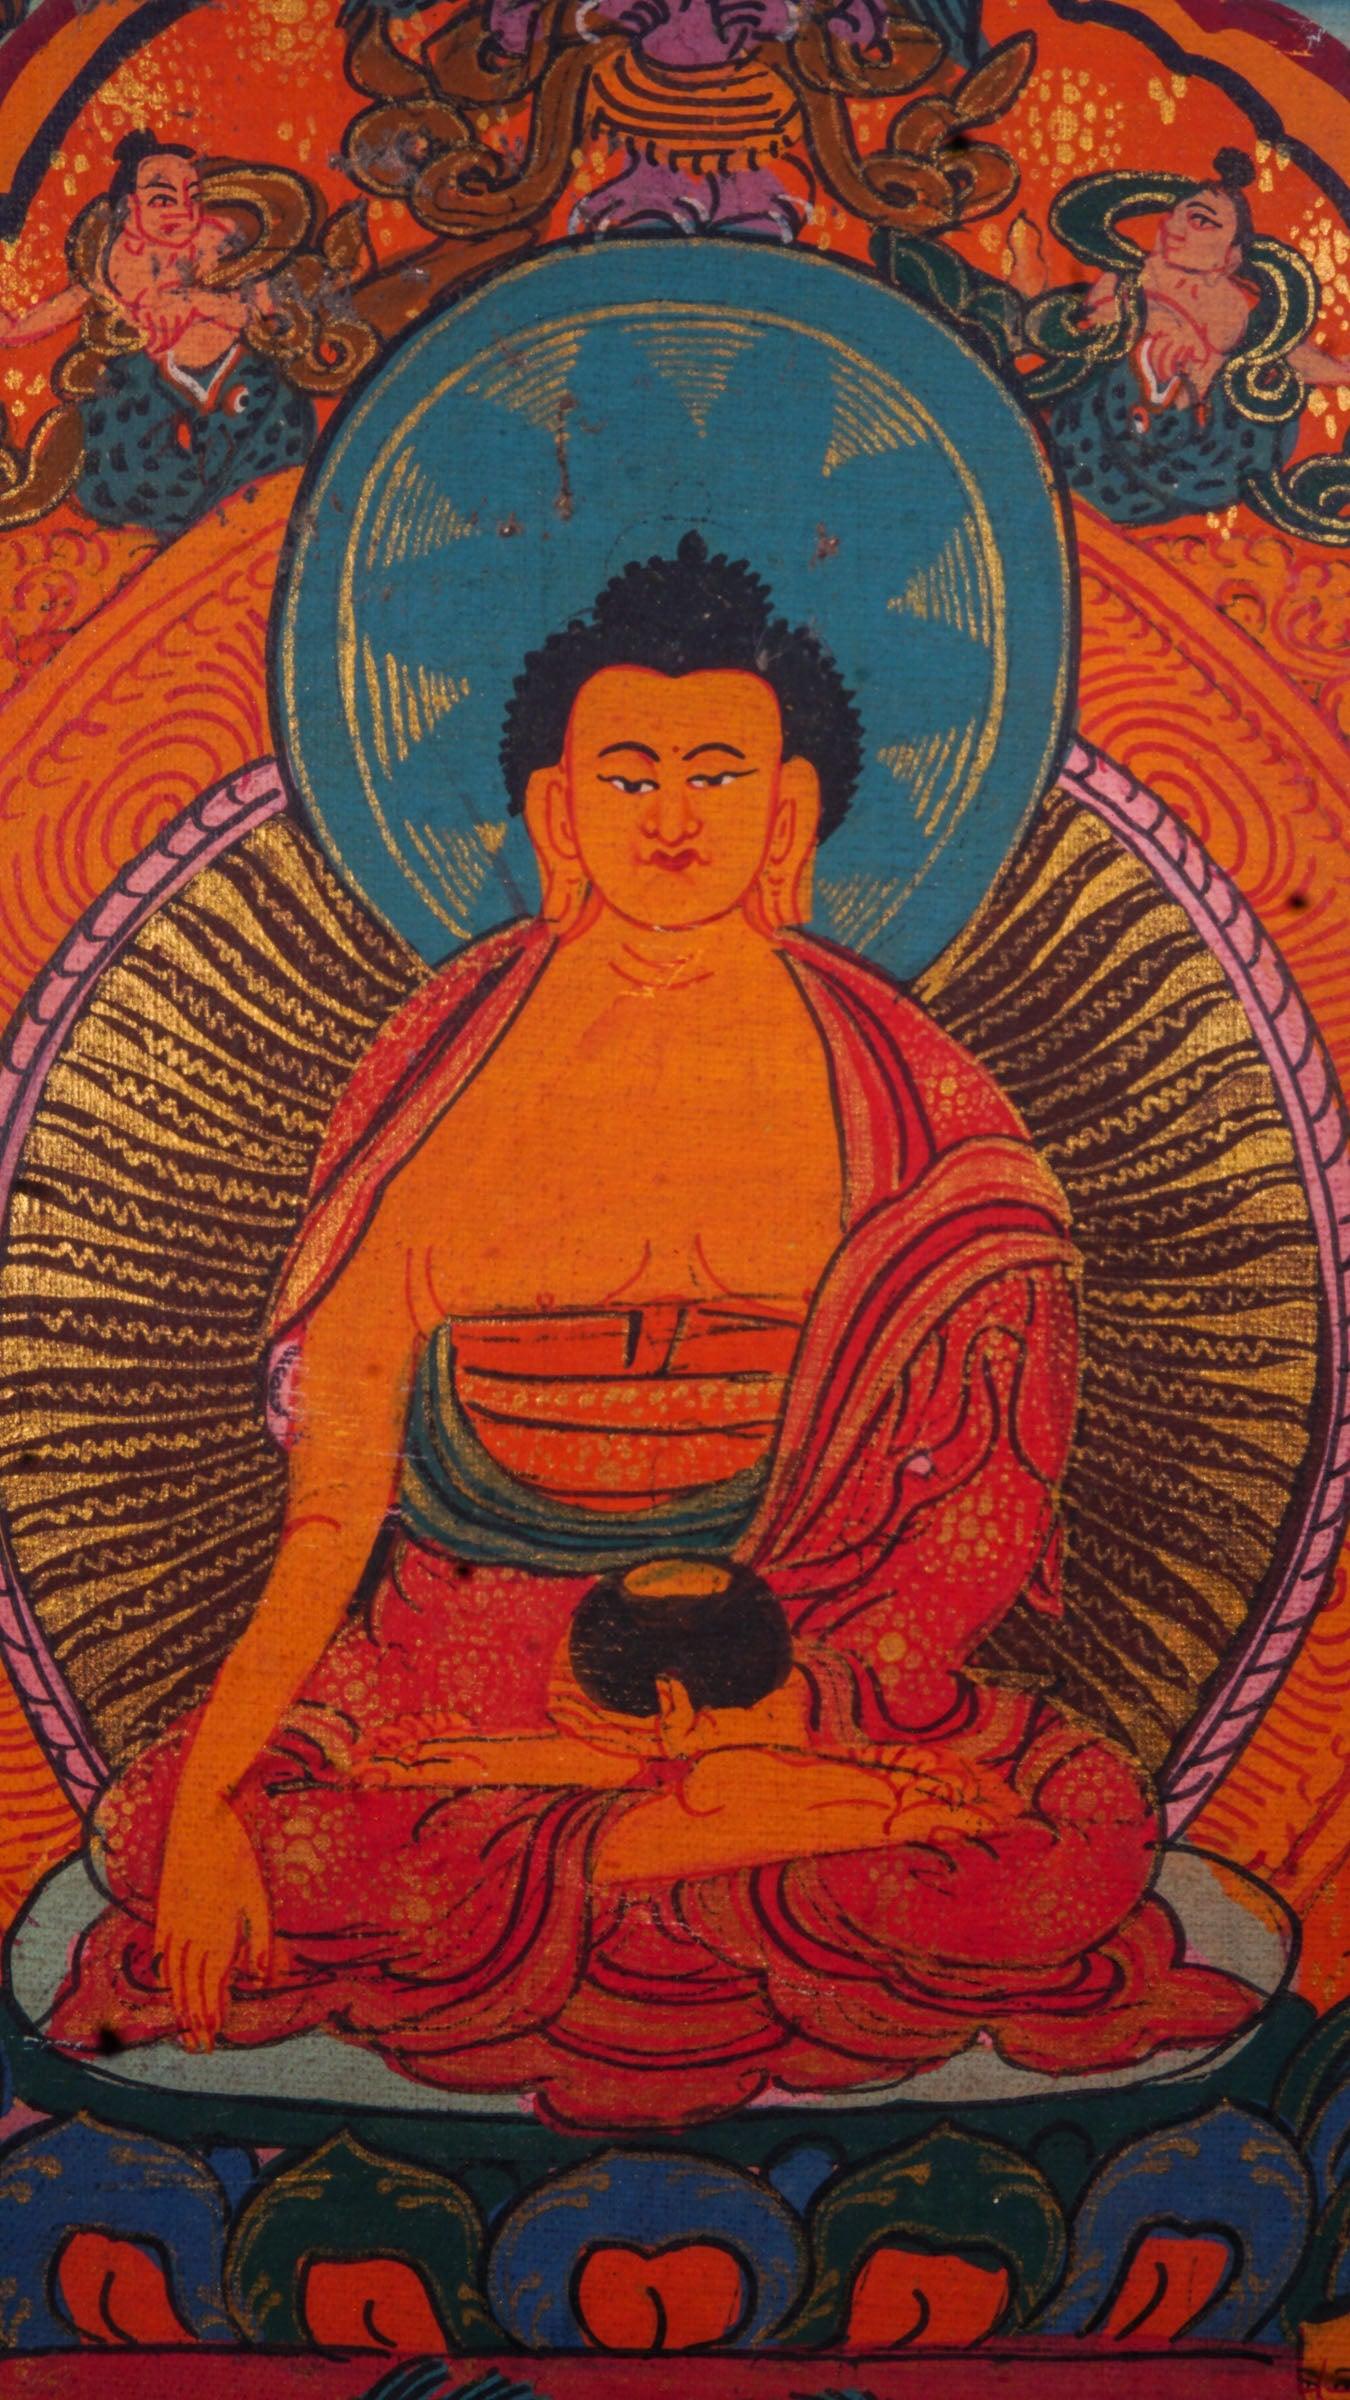 Life history of Buddha life series on cotton canvas, Tibetan Thangka painting